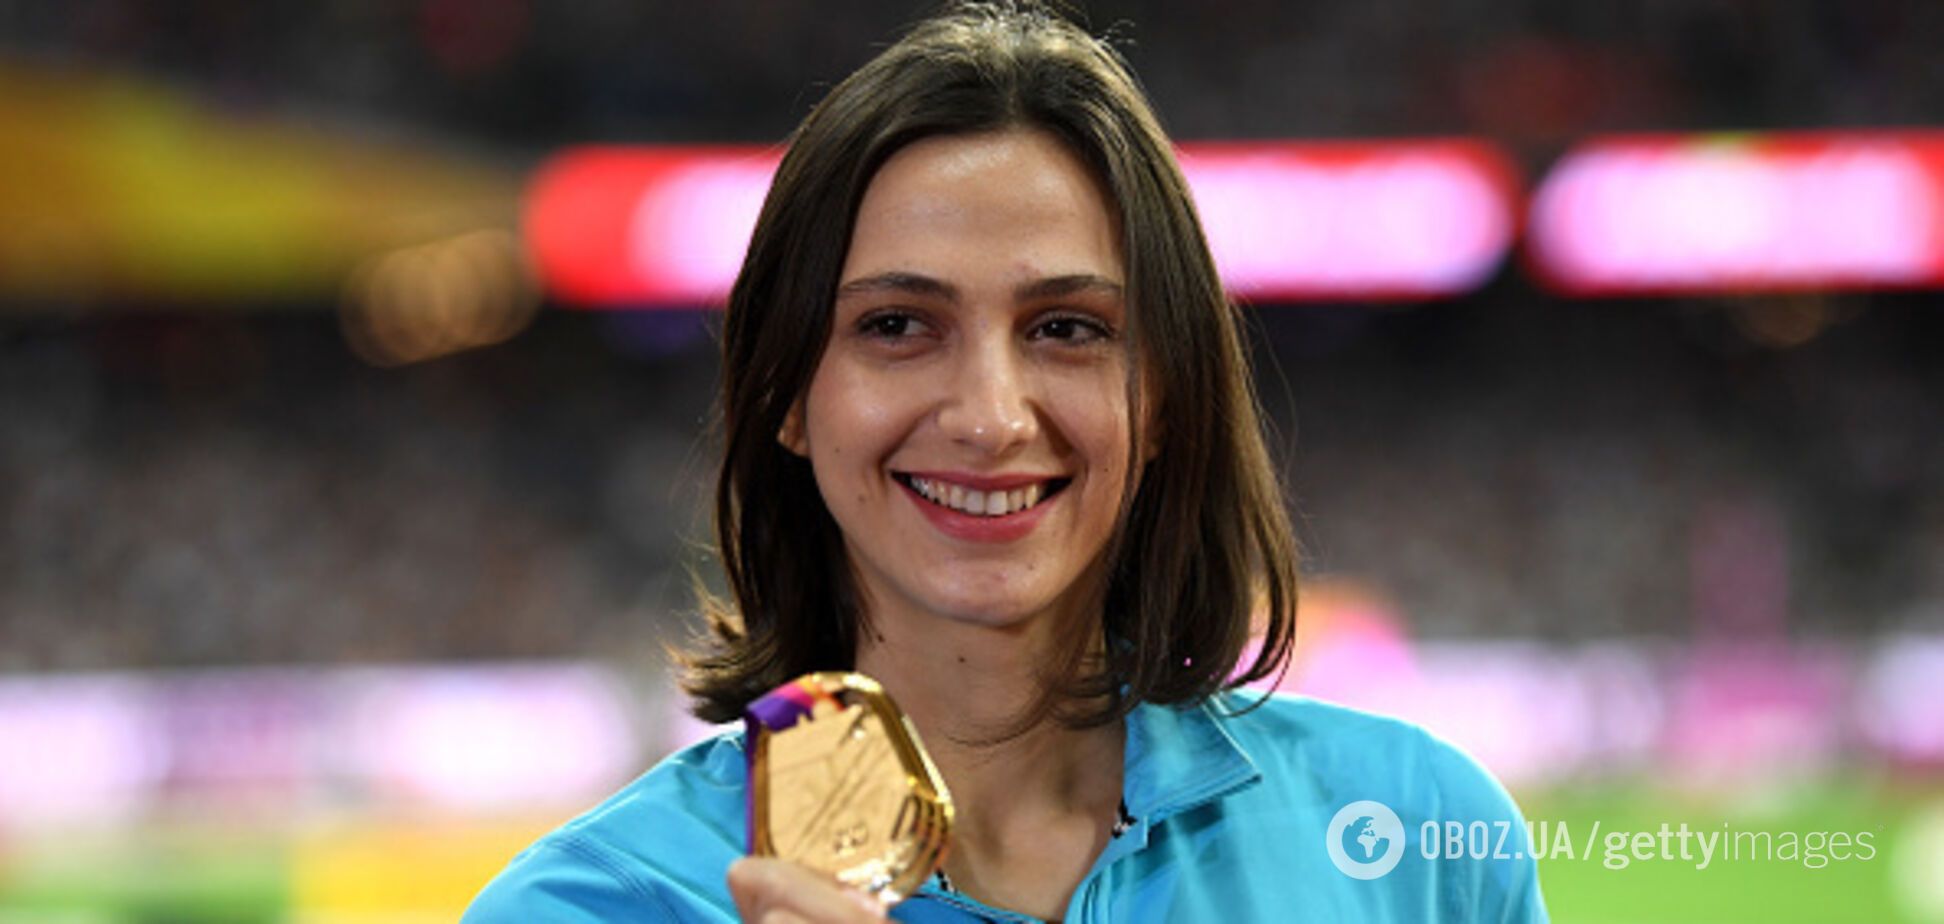 'Уже третий год': олимпийская чемпионка из России рассказала, что носит форму с дырками из-за санкций